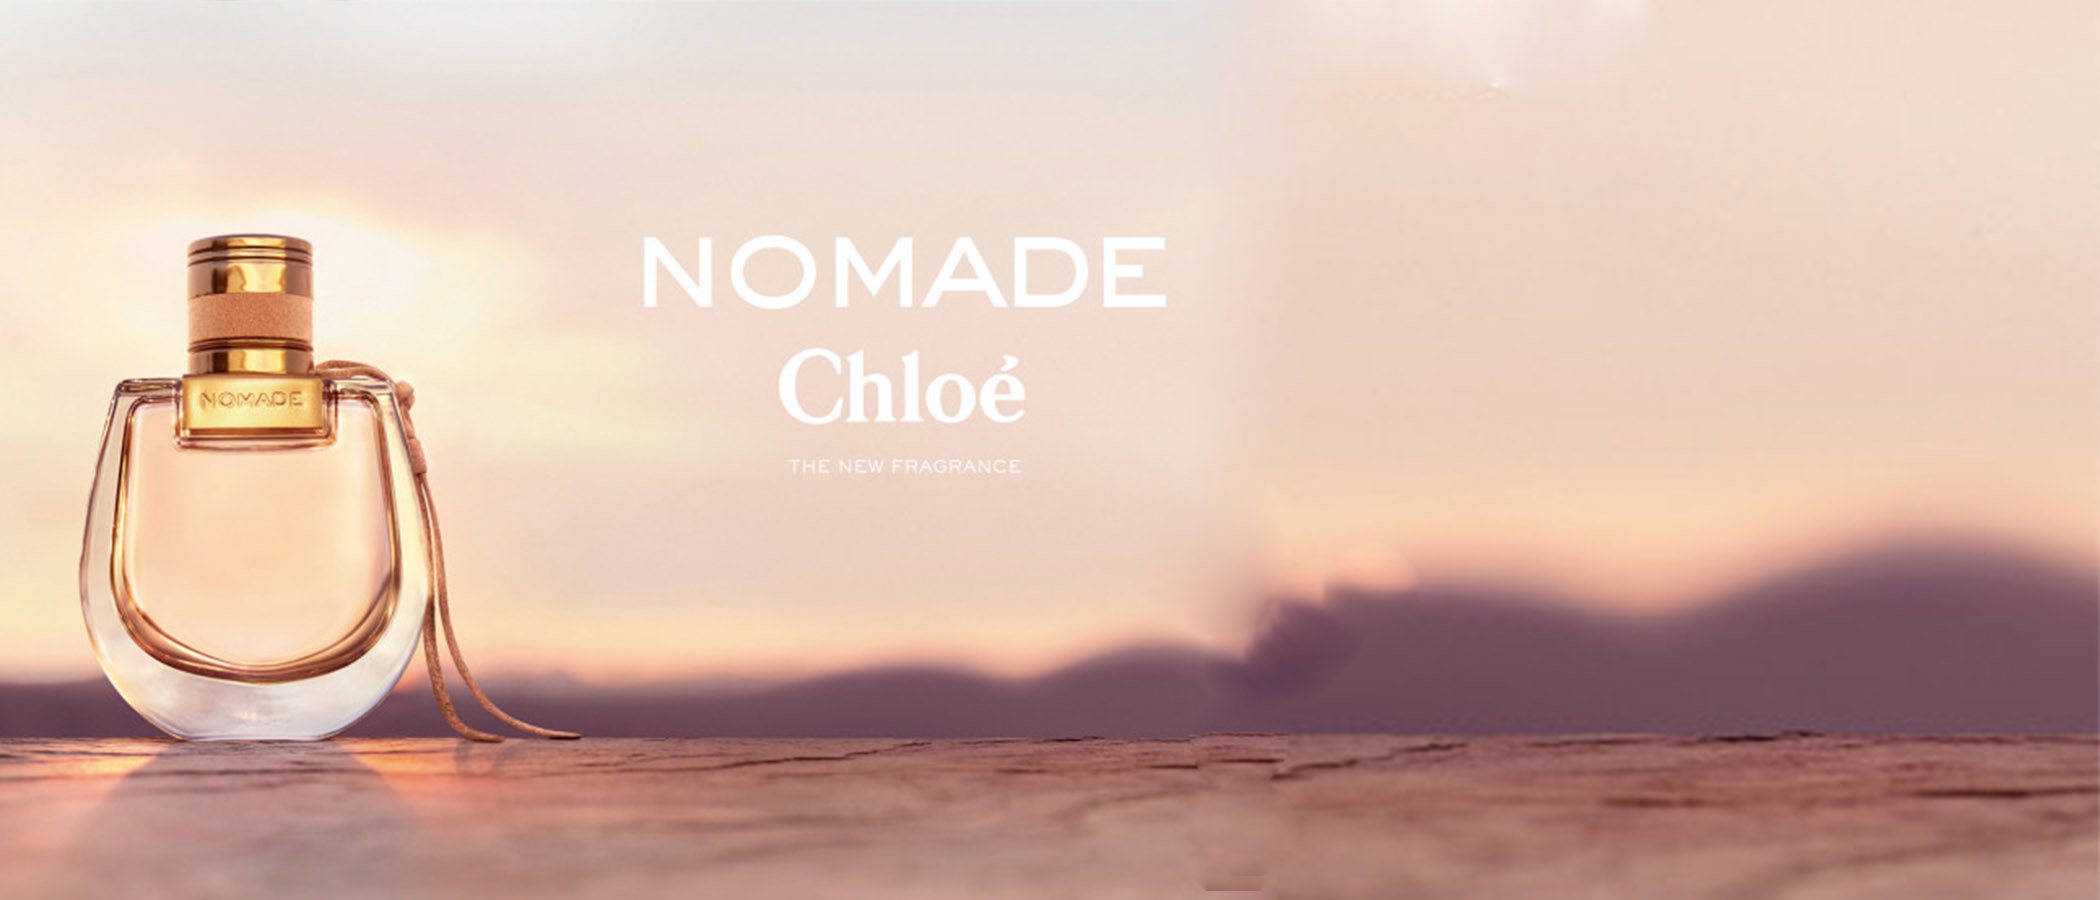 'Nomade', la nueva fragancia de Chloé inspirada en las mujeres libres y empoderadas